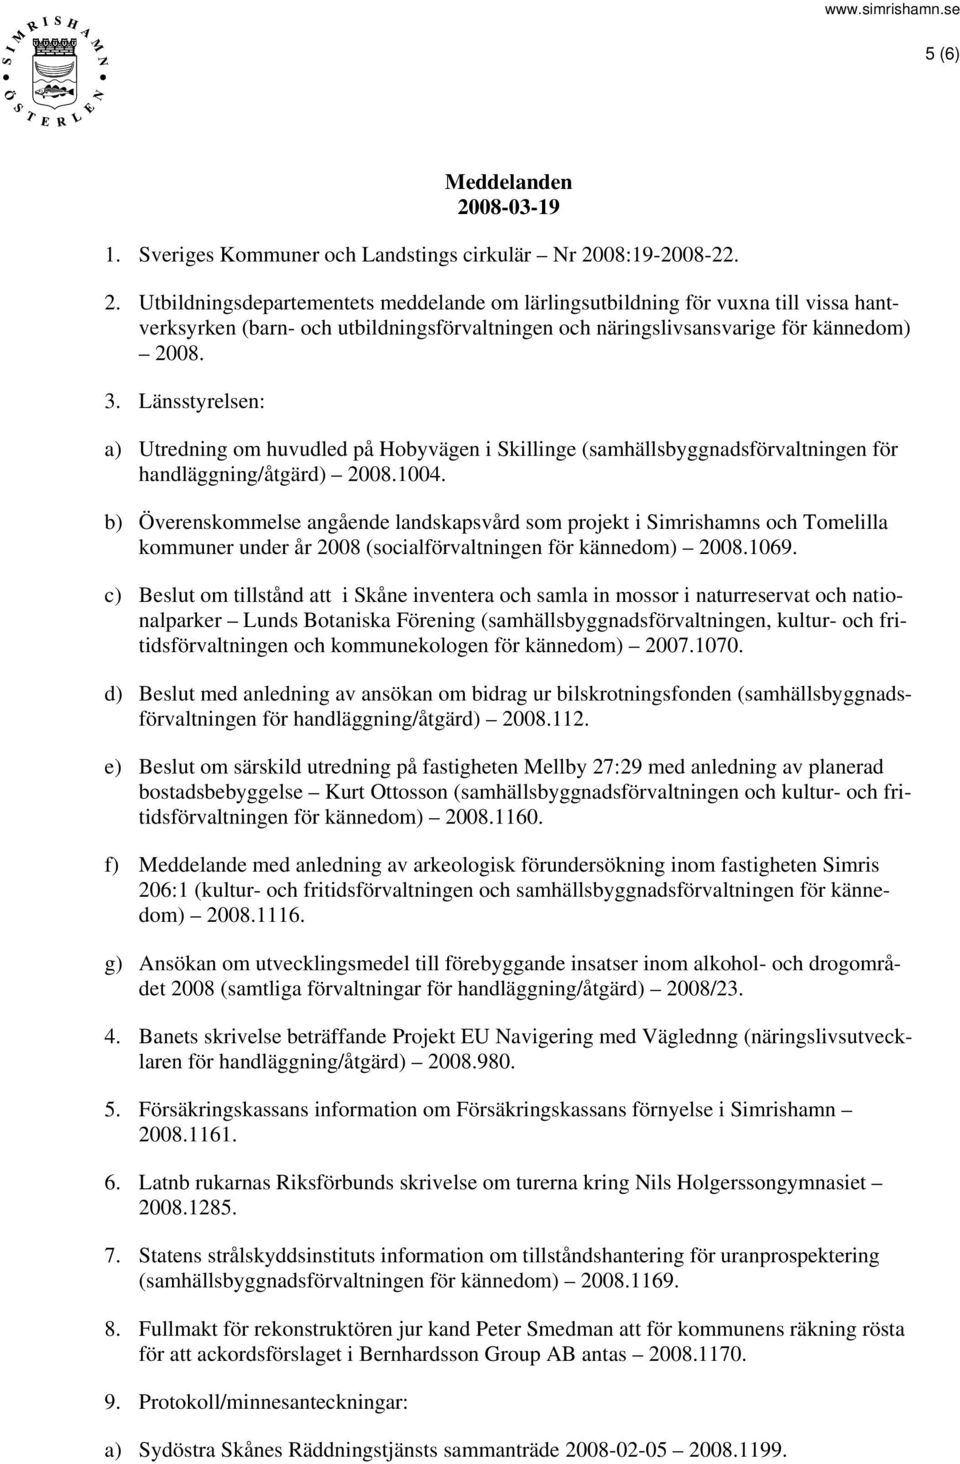 b) Överenskommelse angående landskapsvård som projekt i Simrishamns och Tomelilla kommuner under år 2008 (socialförvaltningen för kännedom) 2008.1069.